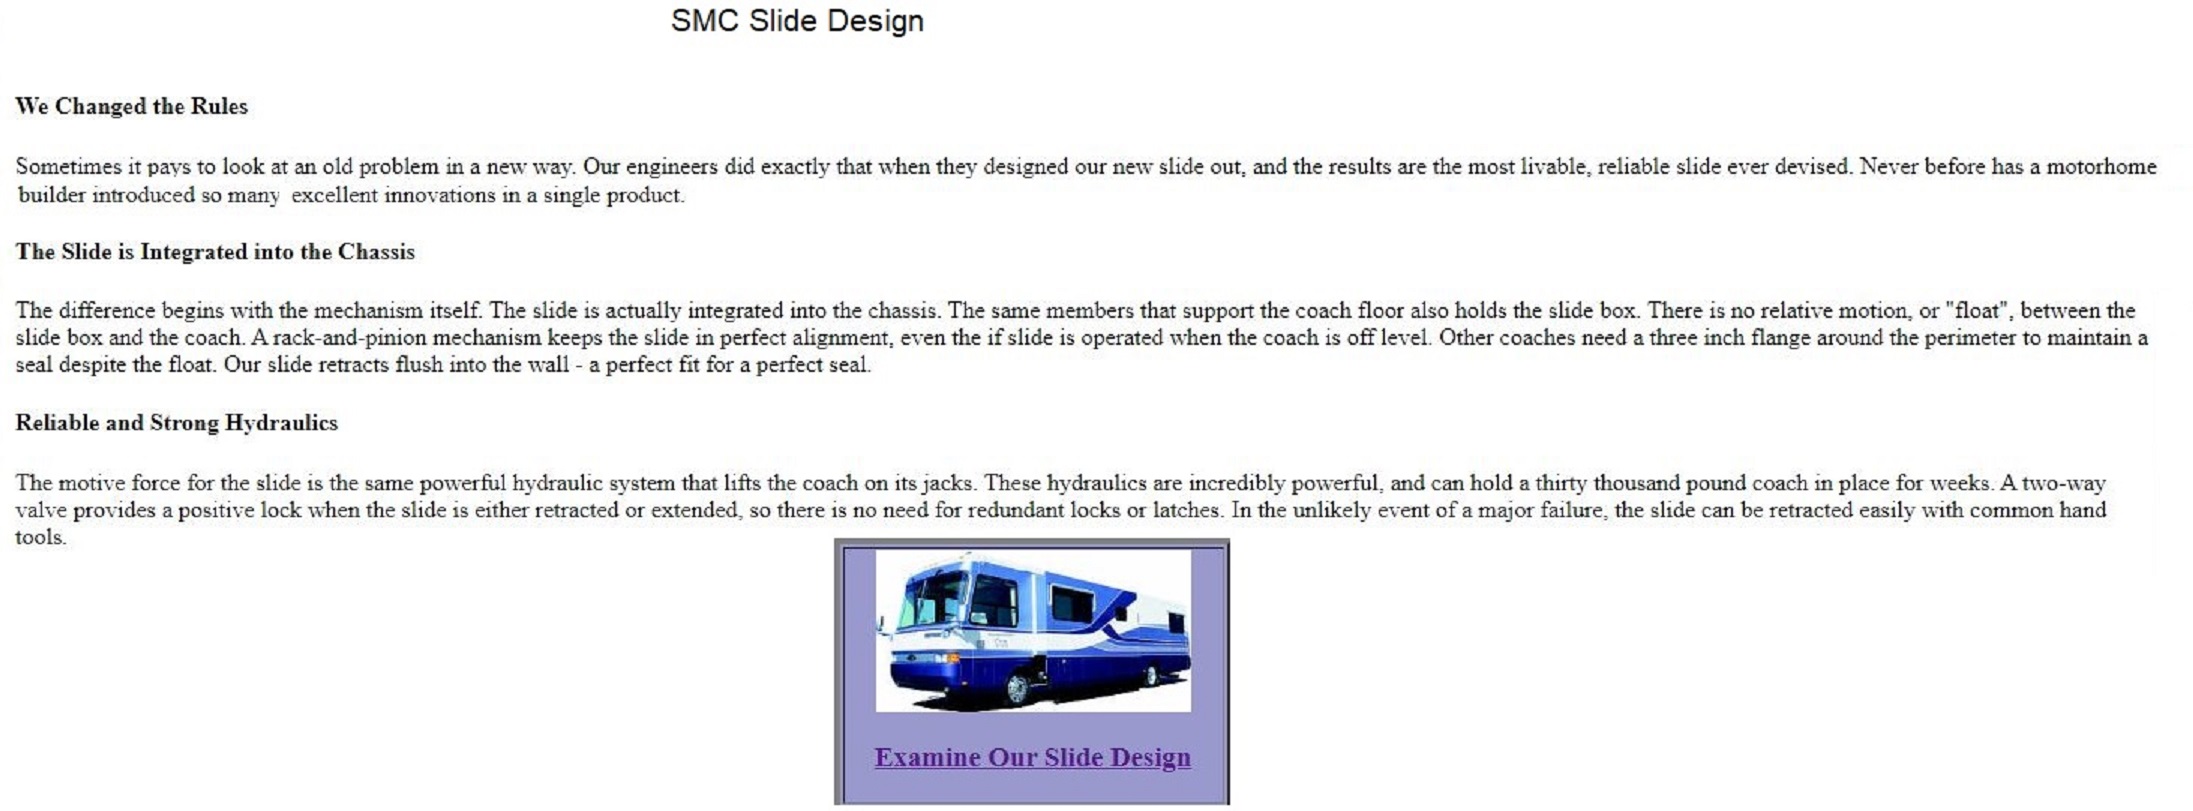 SMC Slide Design.jpg